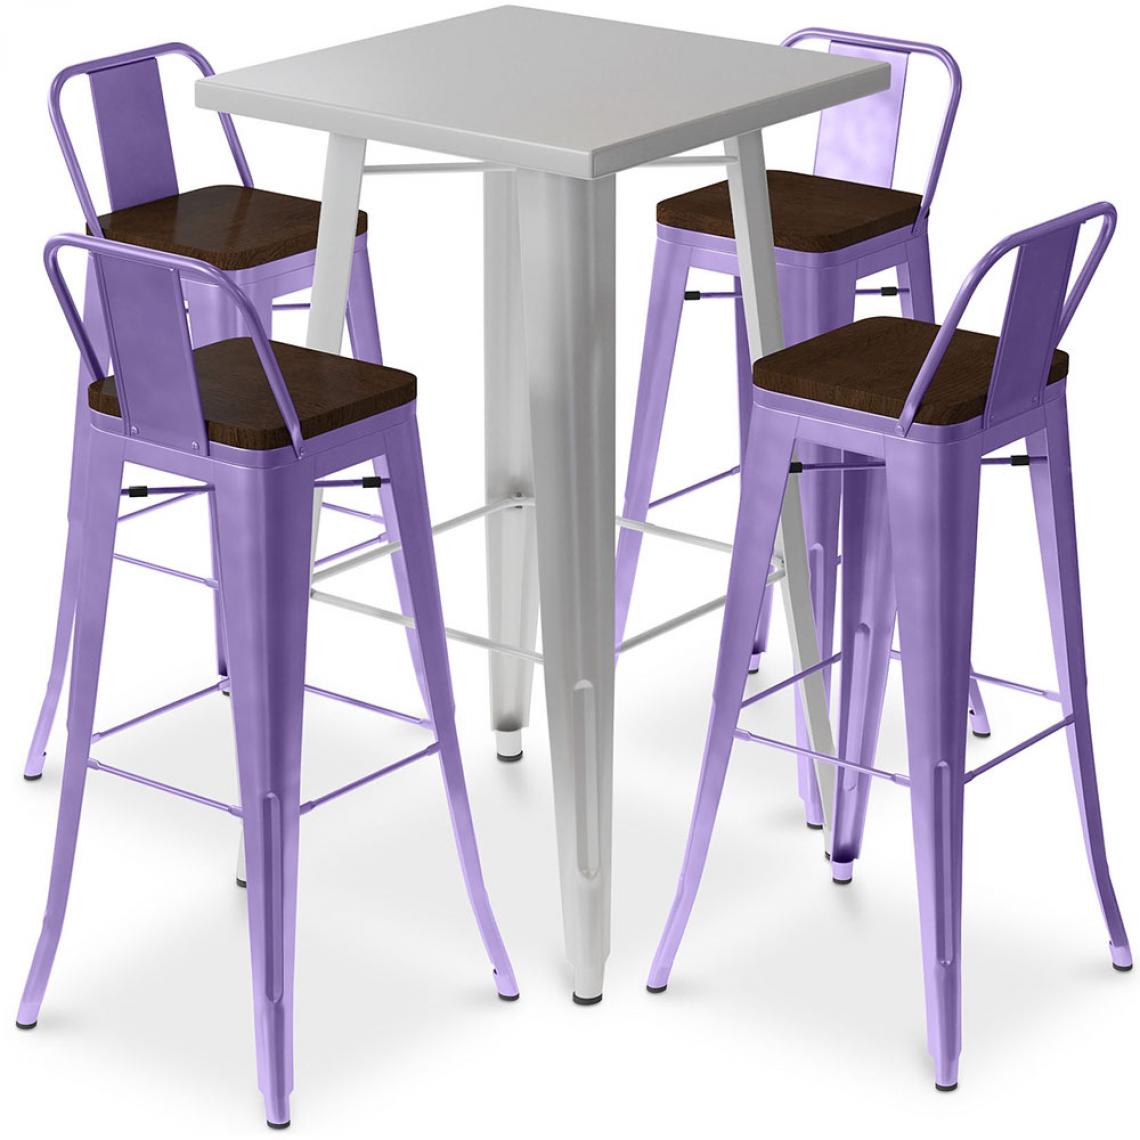 Iconik Interior - Table de bar argentée + 4 tabourets de bar en acier Ensemble Bistrot Stylix Design industriel - Nouvelle édition Violet pastel - Tabourets